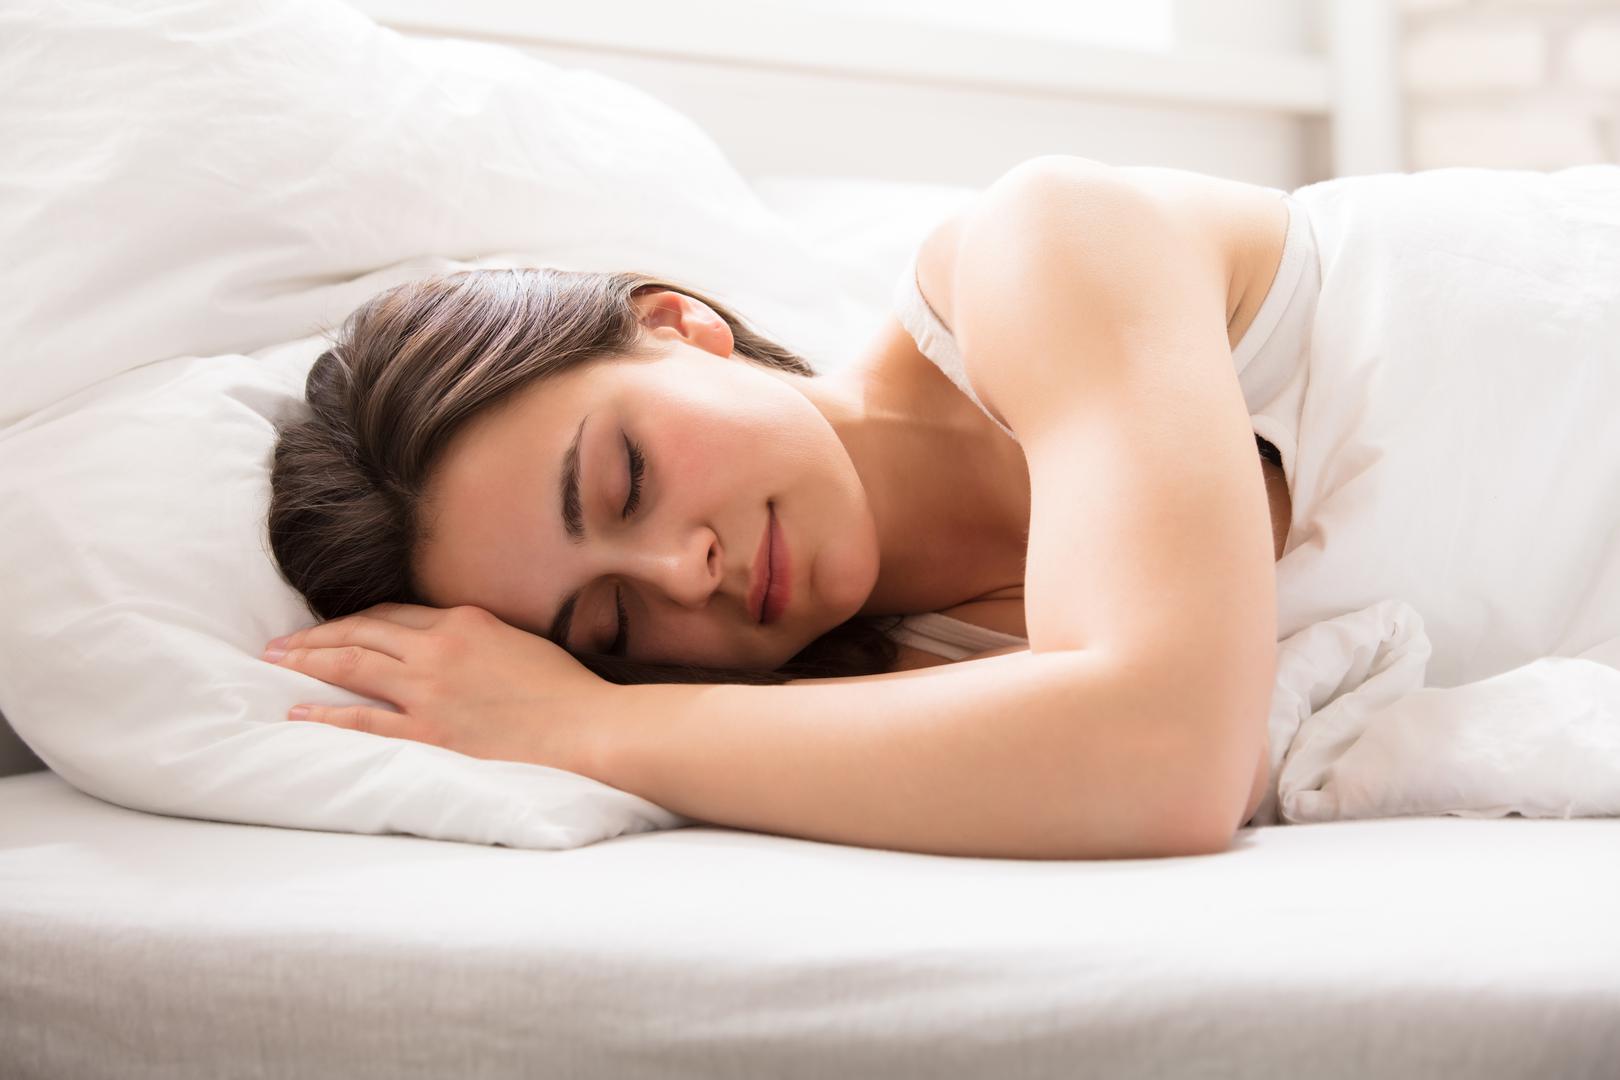 4. Hrkanje je bezopasno: Glasno i bučno hrkanje prekidano pauzama u disanju označava apneju, opasan poremećaj spavanja. Oboljeli prestaju disati u snu na neko vrijemo i to više puta tijekom noći. Neki od simptoma su konstantan umor, razdražljivost, poremećaji s koncentracijom, kao i glavobolja.